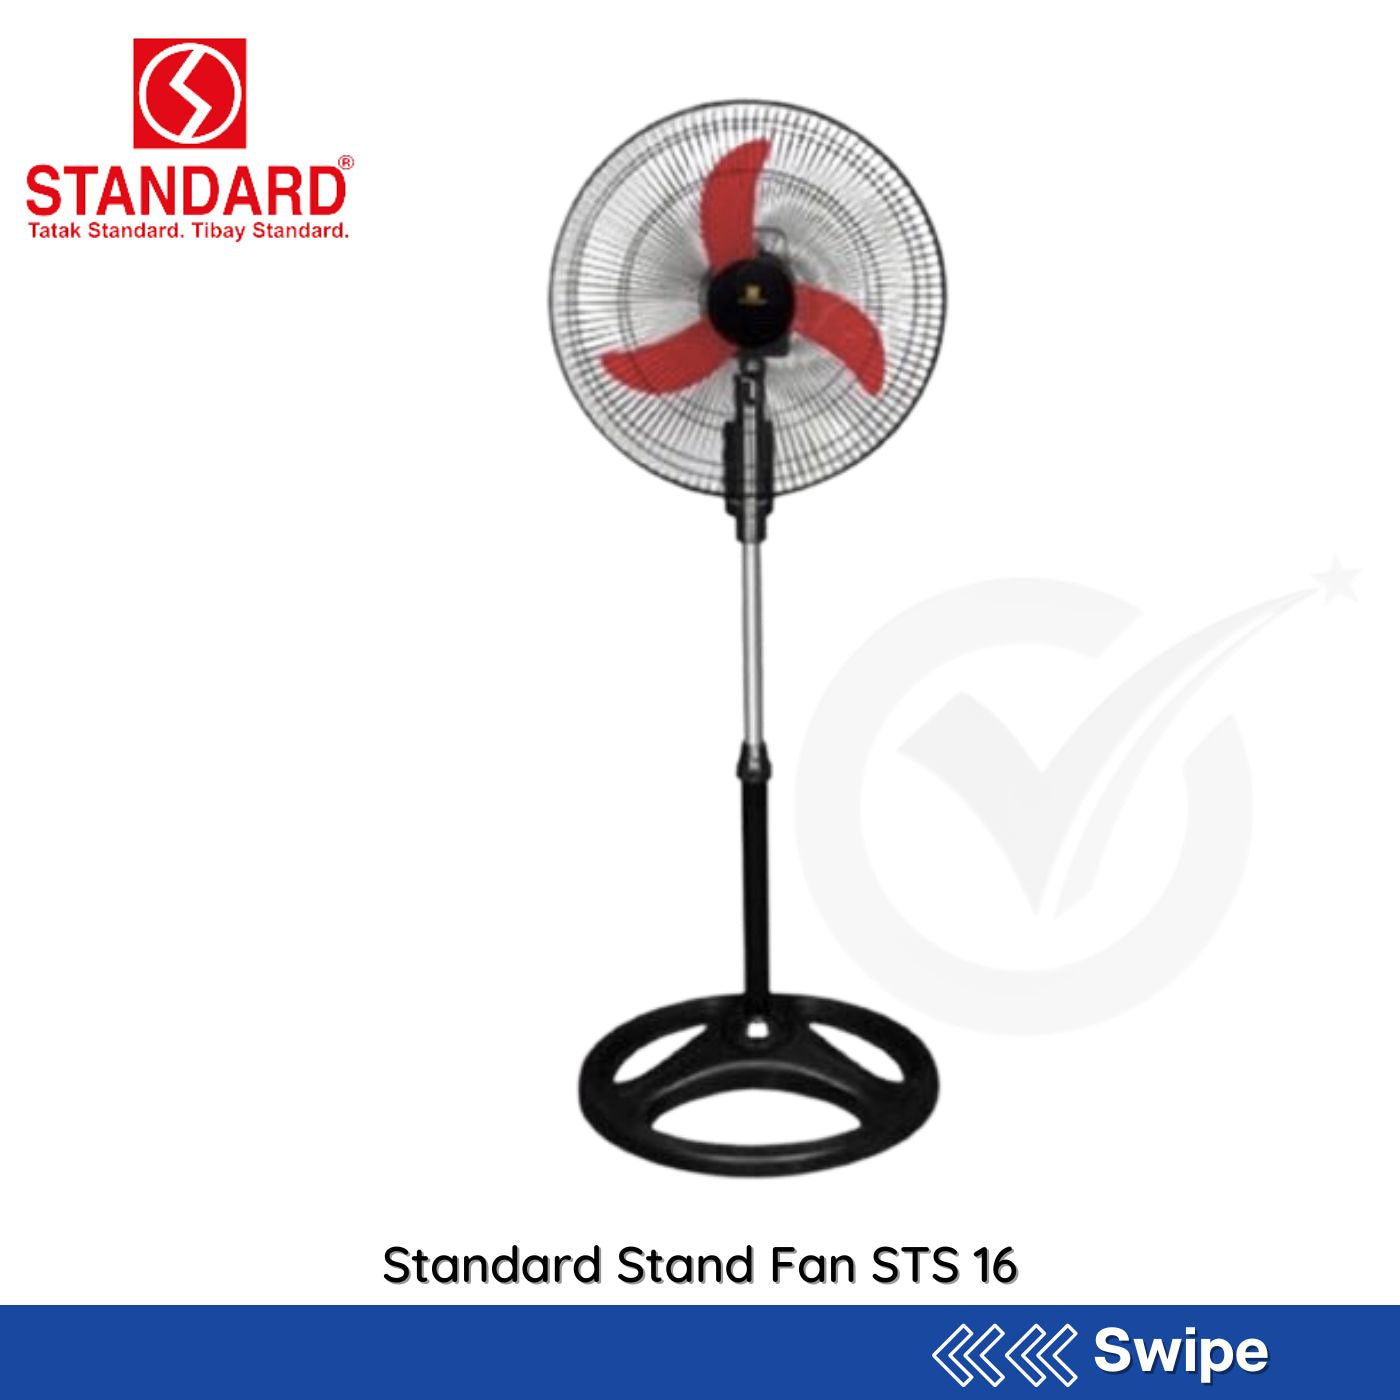 Standard Stand Fan STS 16